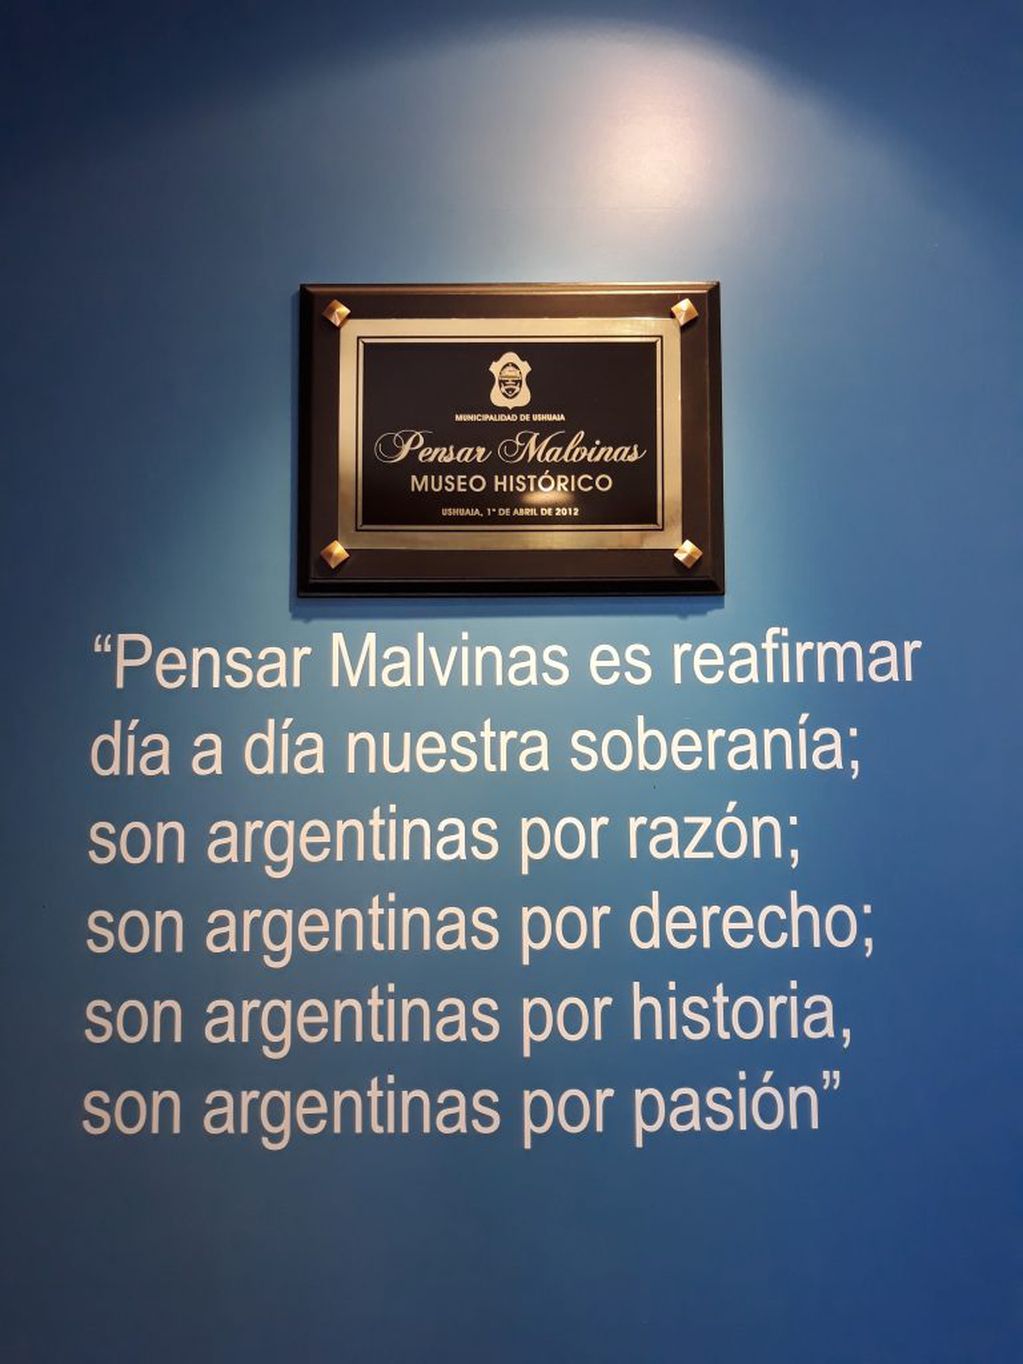 Placa en la entrada del Museo "Pensar Malvinas" reafirma el sentir malvinero y el ofrcimiento del mismo ante la pandemia representa también el sentir de ayudar a los argentinos desde este lugar.